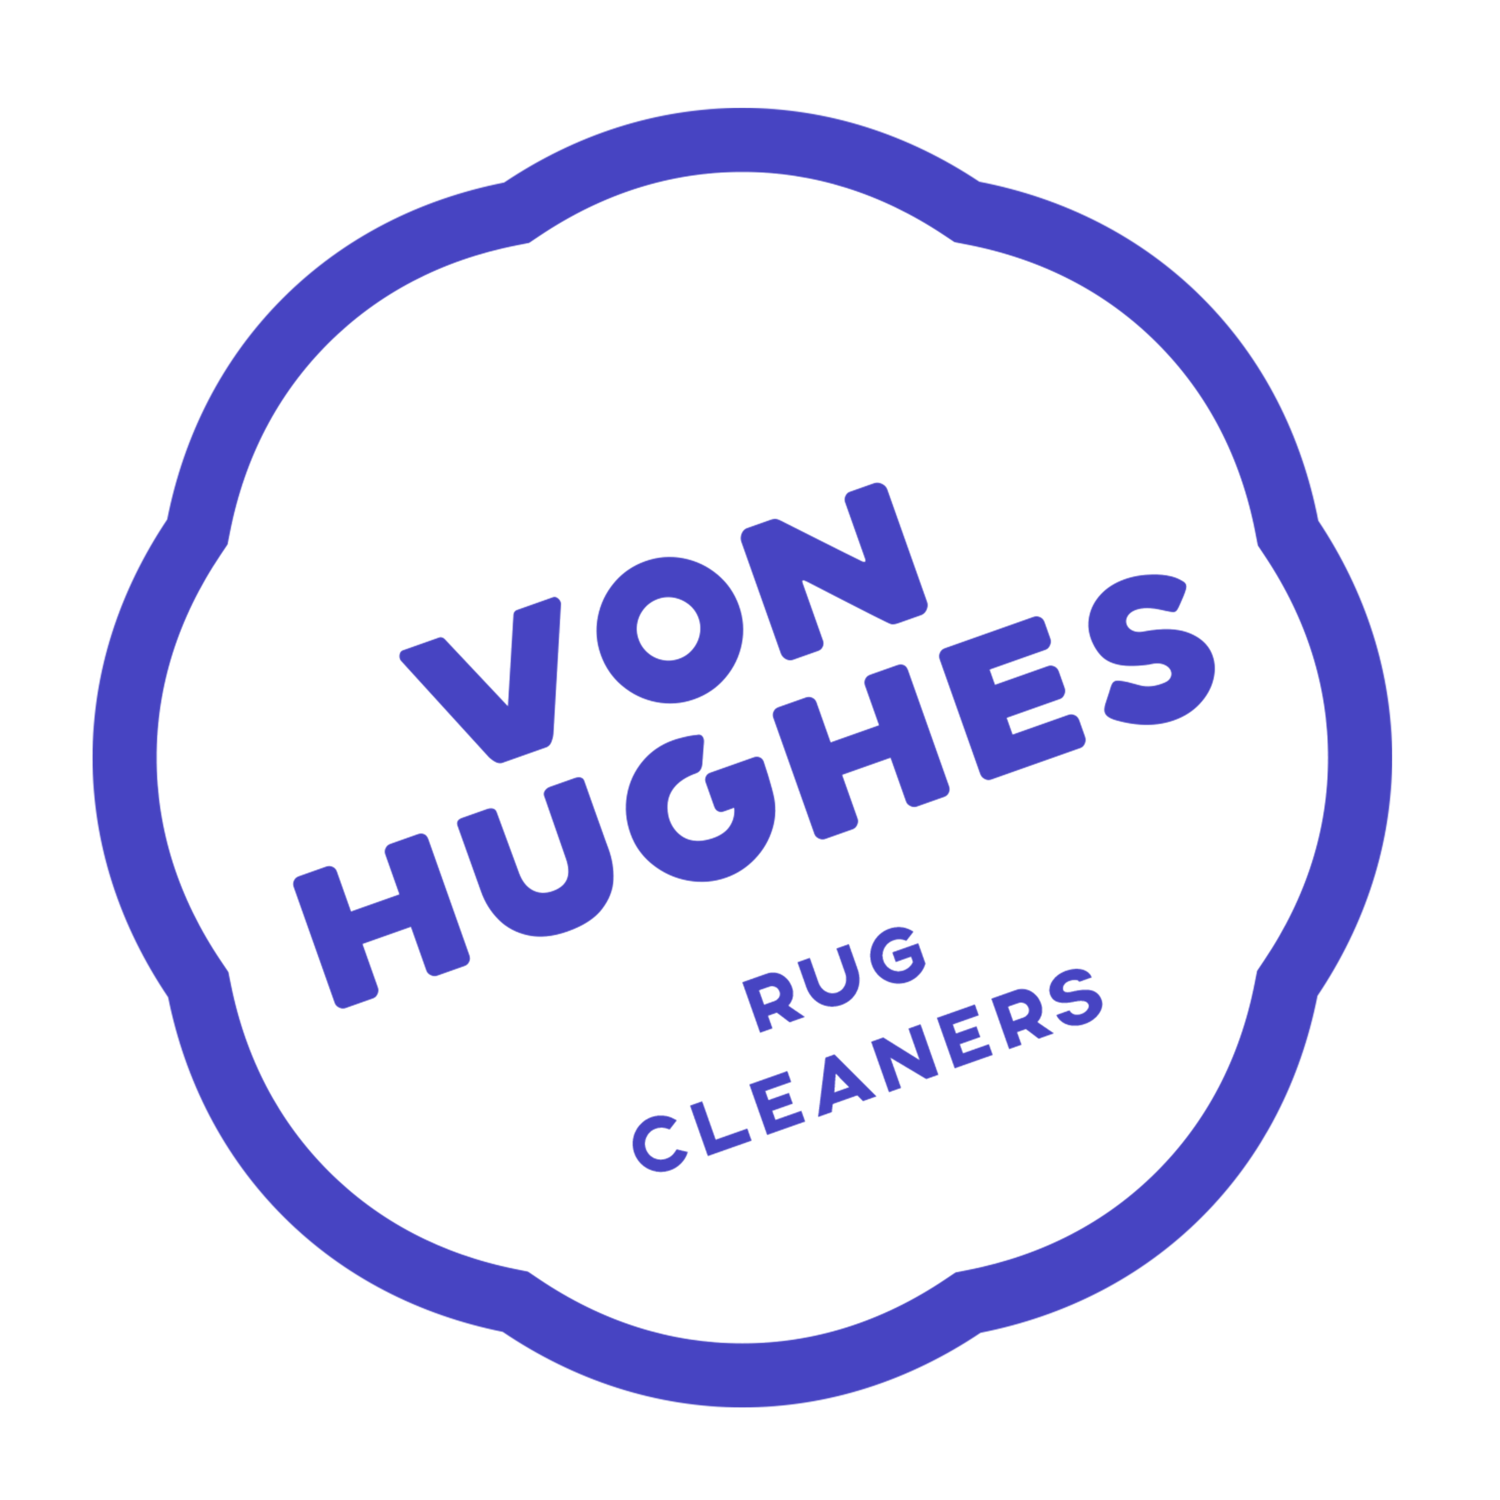 Von Hughes Rug Cleaners